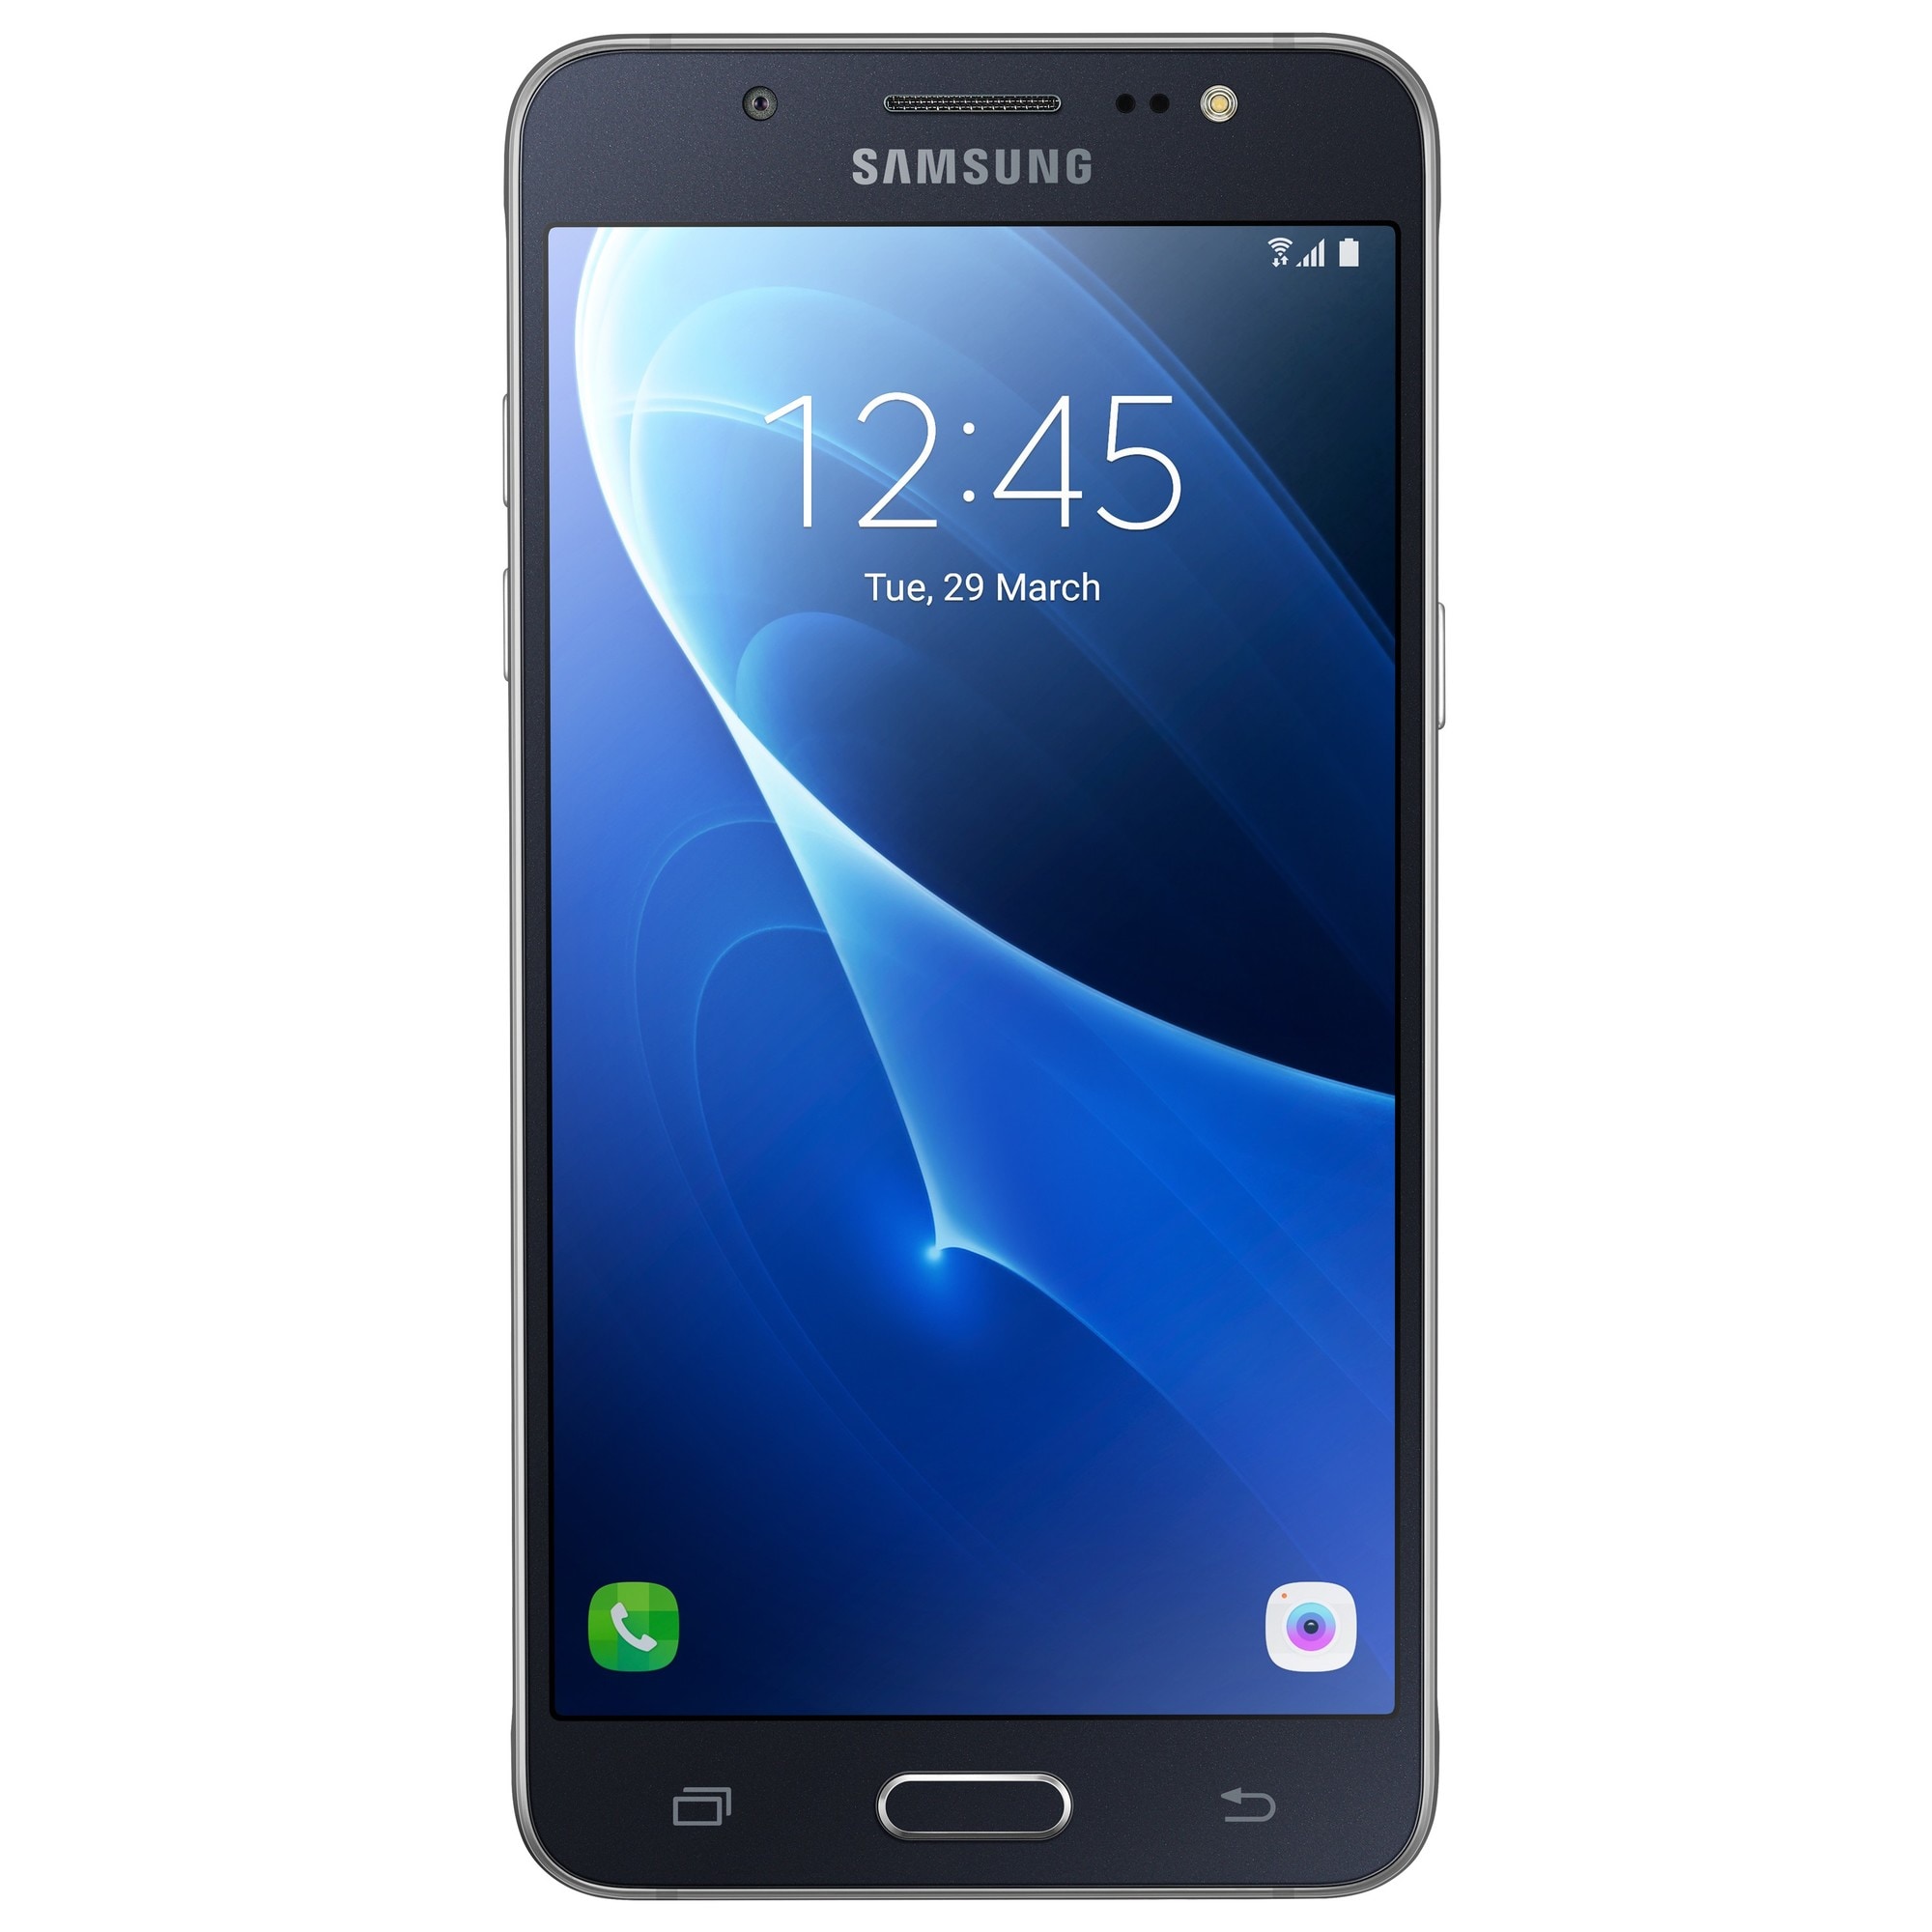 Samsung Galaxy J5 smartphone - sort | Elgiganten